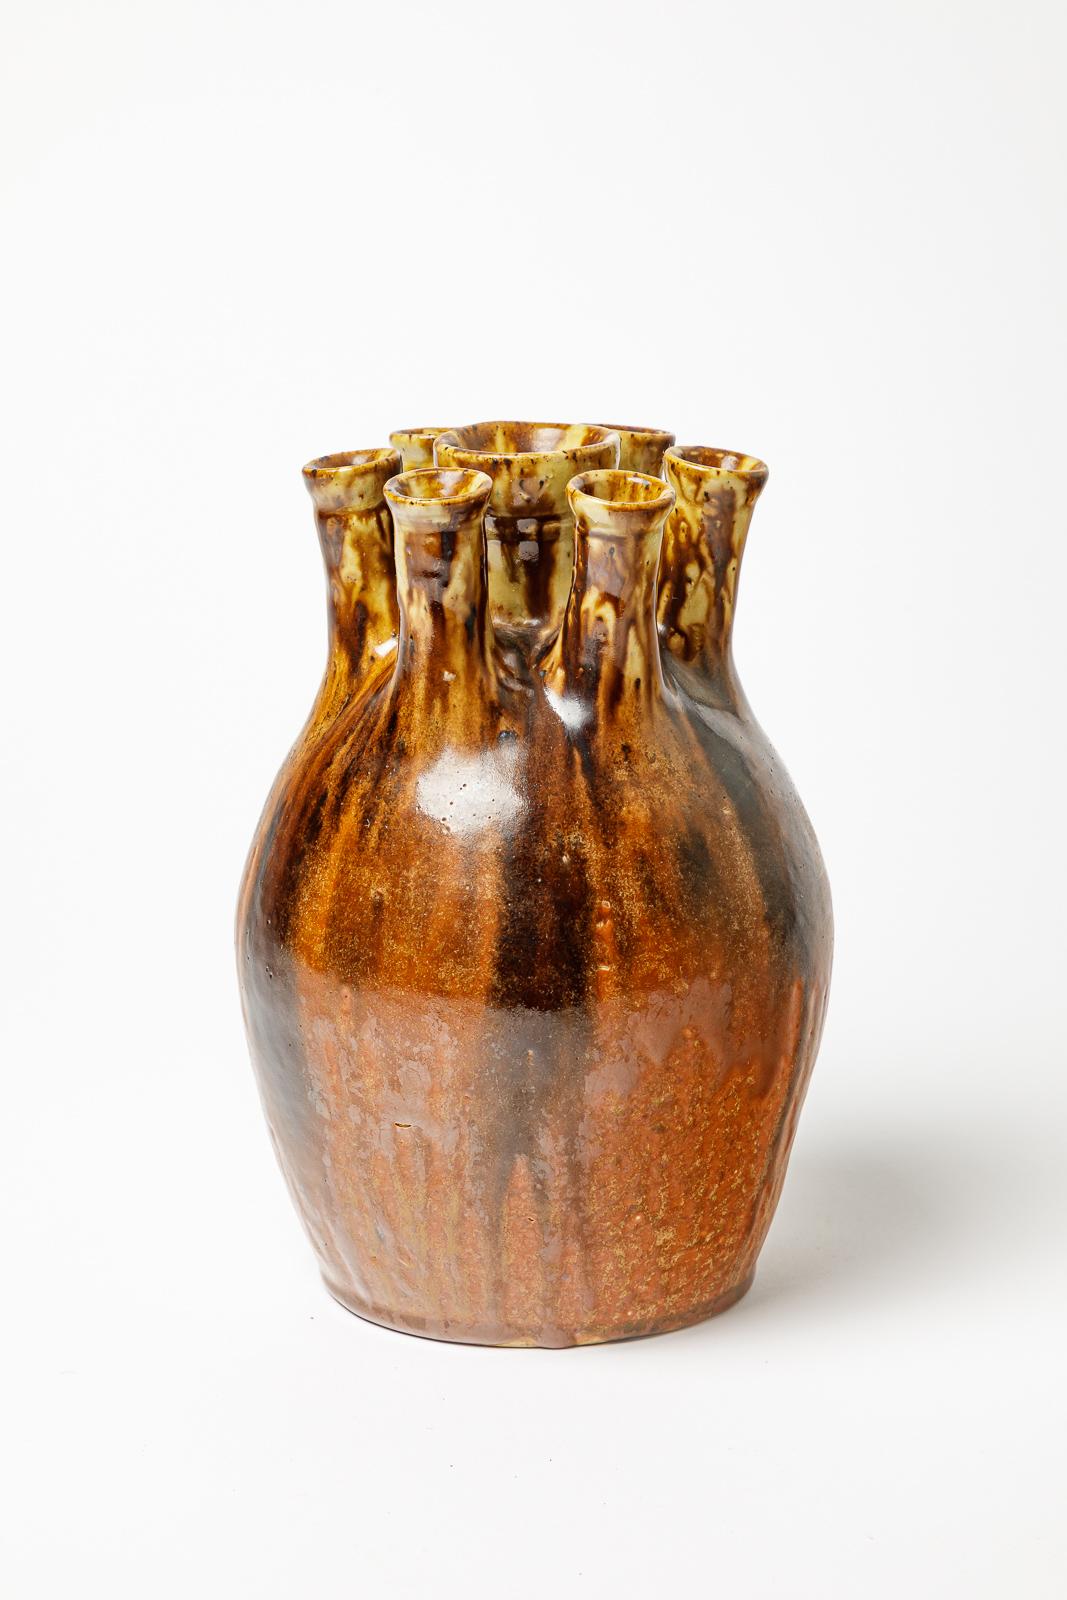 Joseph Talbot

Art deco stoneware ceramic flower vase realised in La Borne

Circa 1940

Original design

Original perfect condition

Signed under the base

Height 22 cm
Large 15 cm.